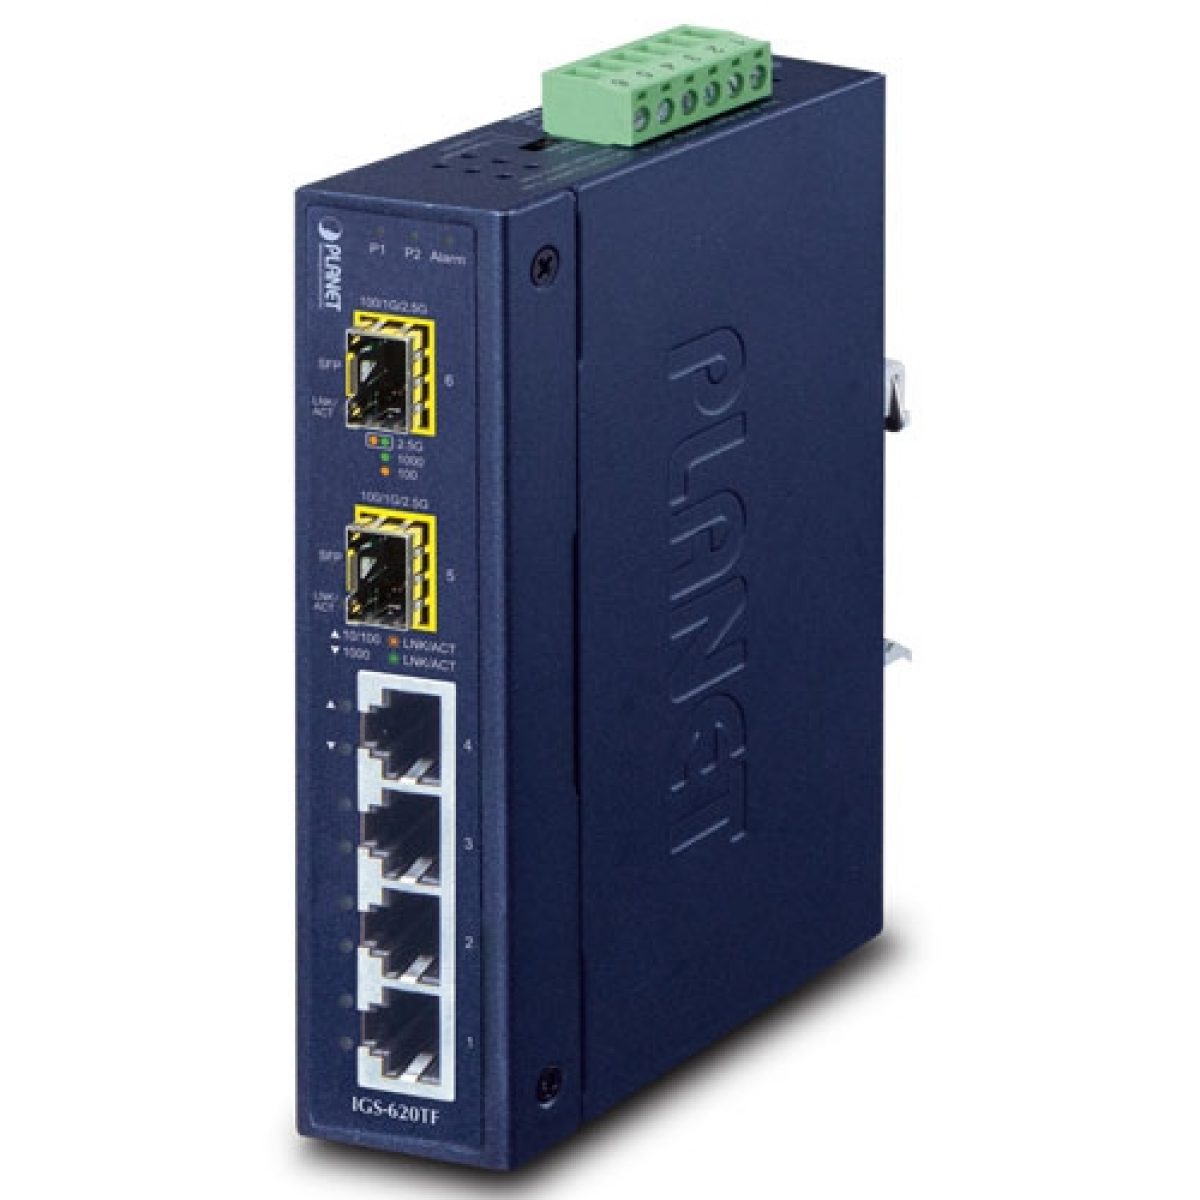 1000Mbps 4 Port RJ45 to 2 Fiber Gigabit Ethernet Optical Switch